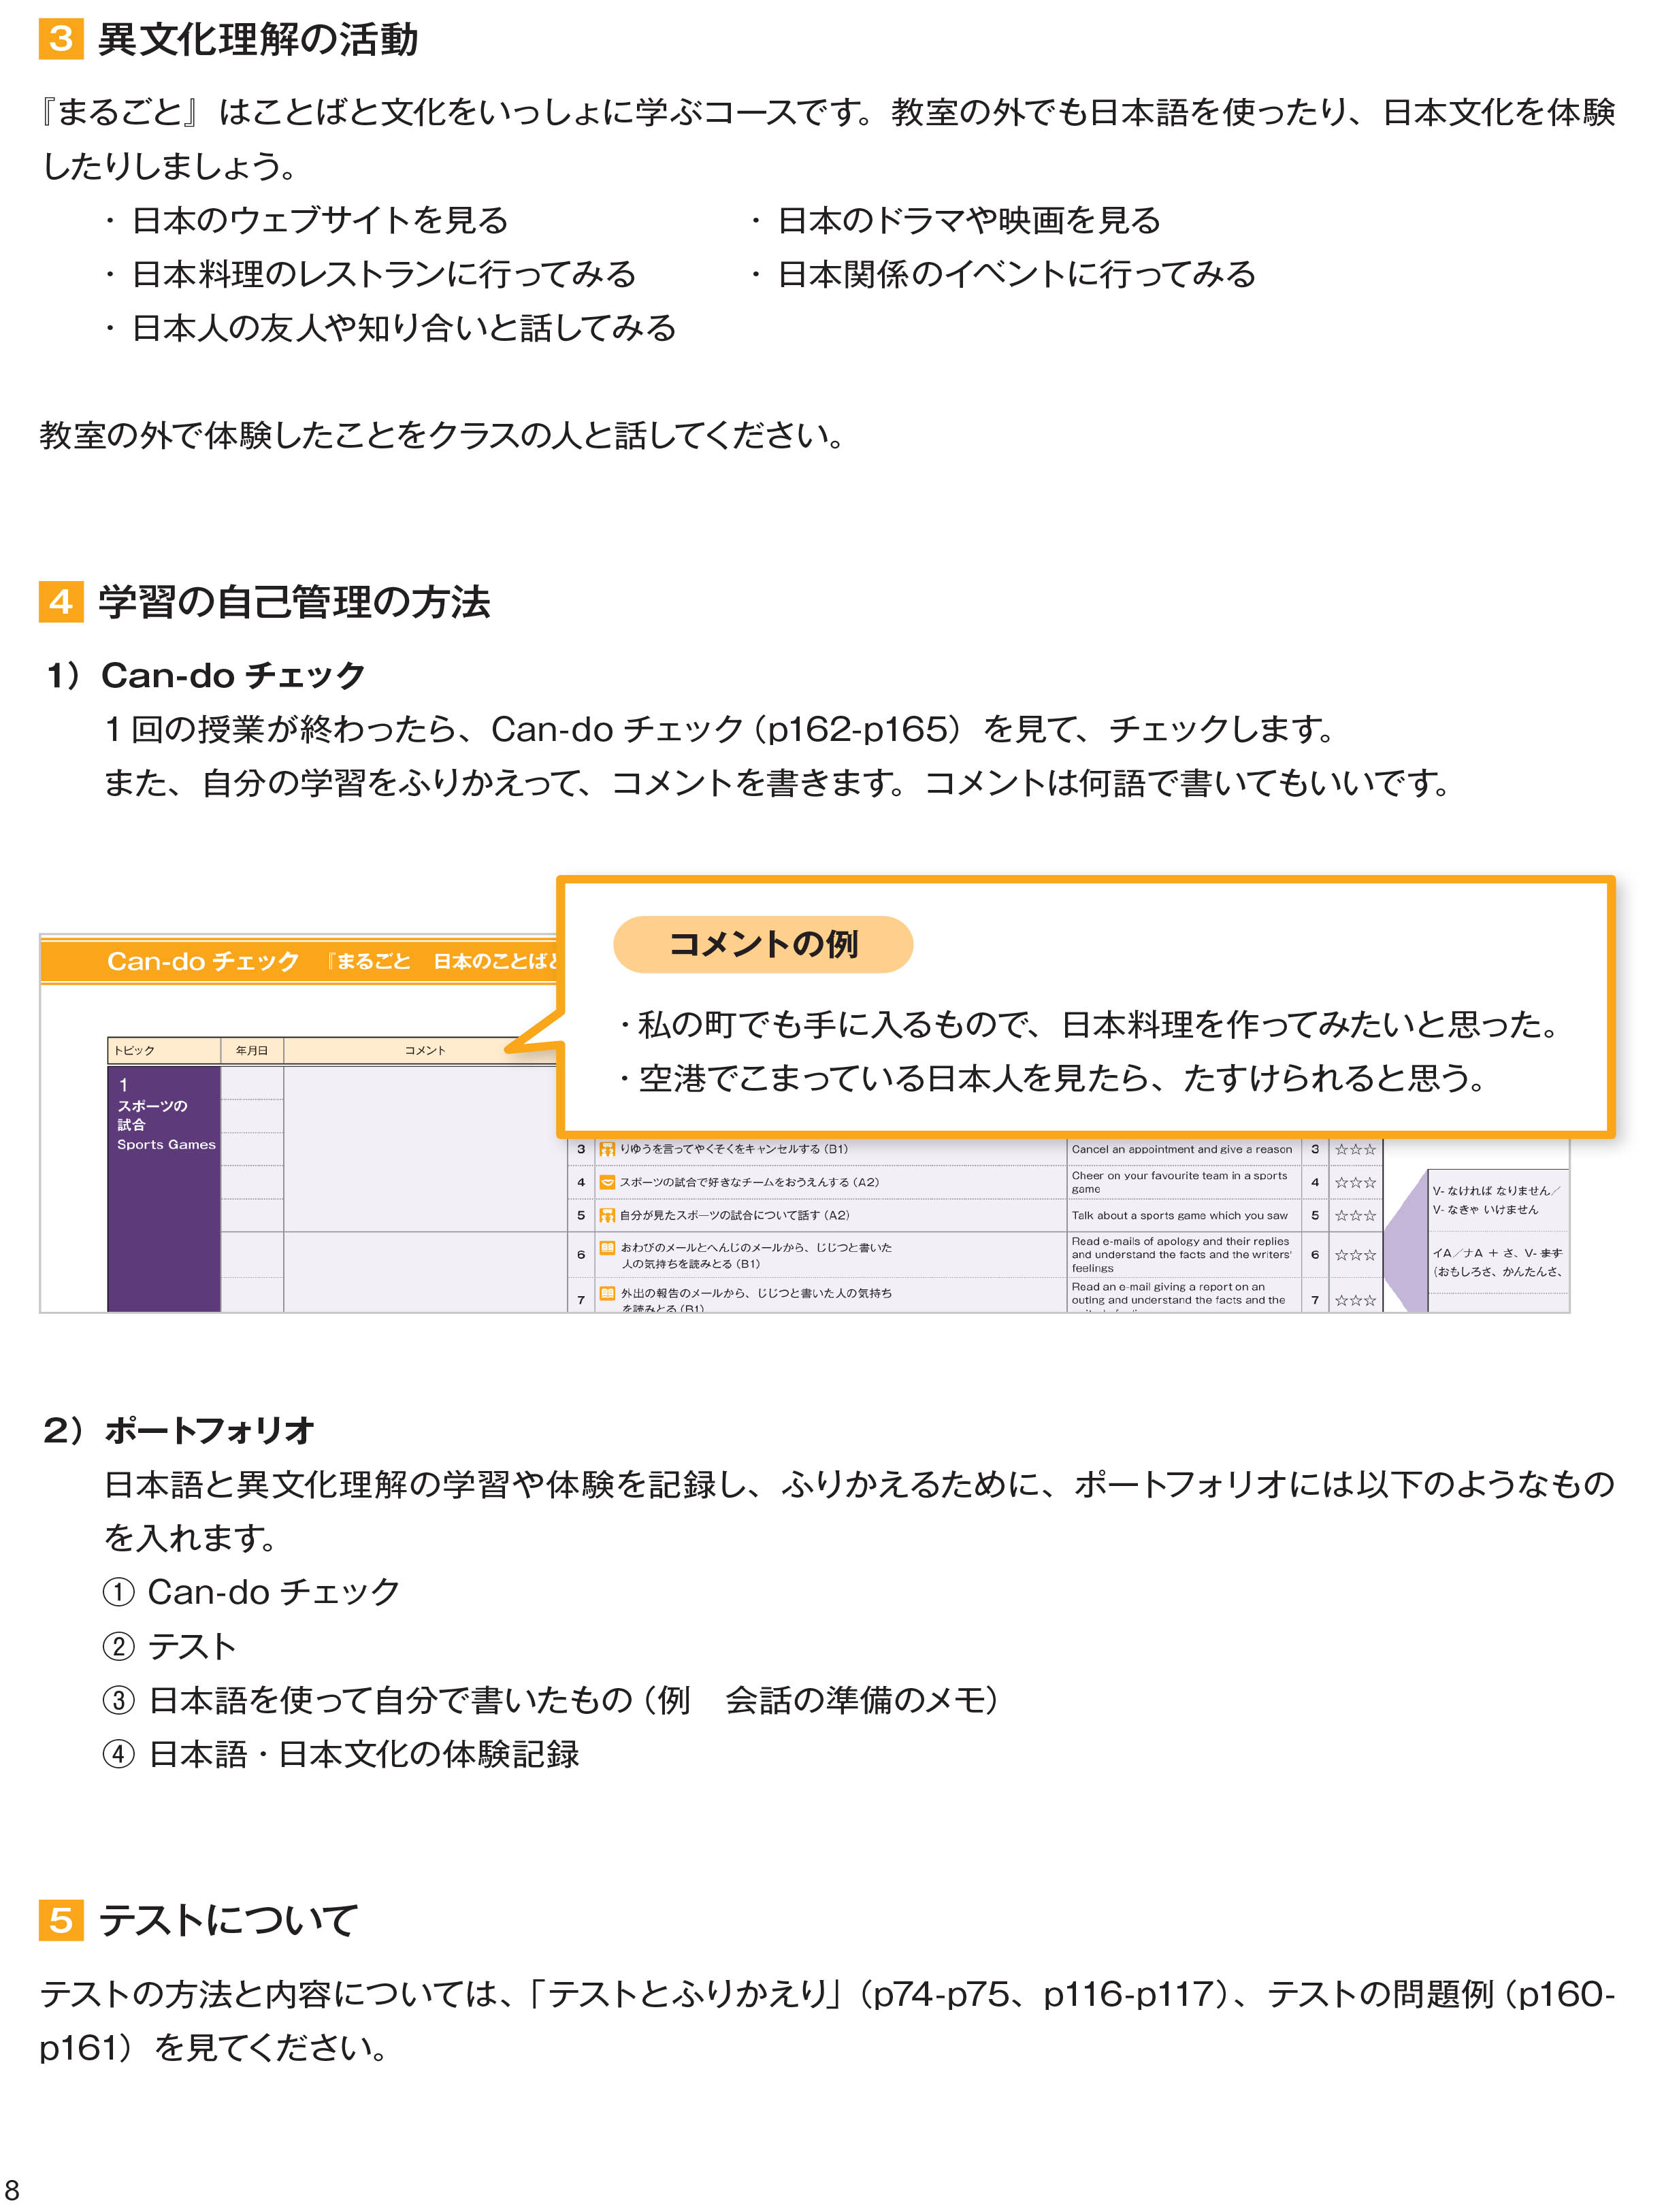 Ngôn Ngữ Và Văn Hóa Nhật Bản - Sơ - Trung Cấp A2/B1 PDF